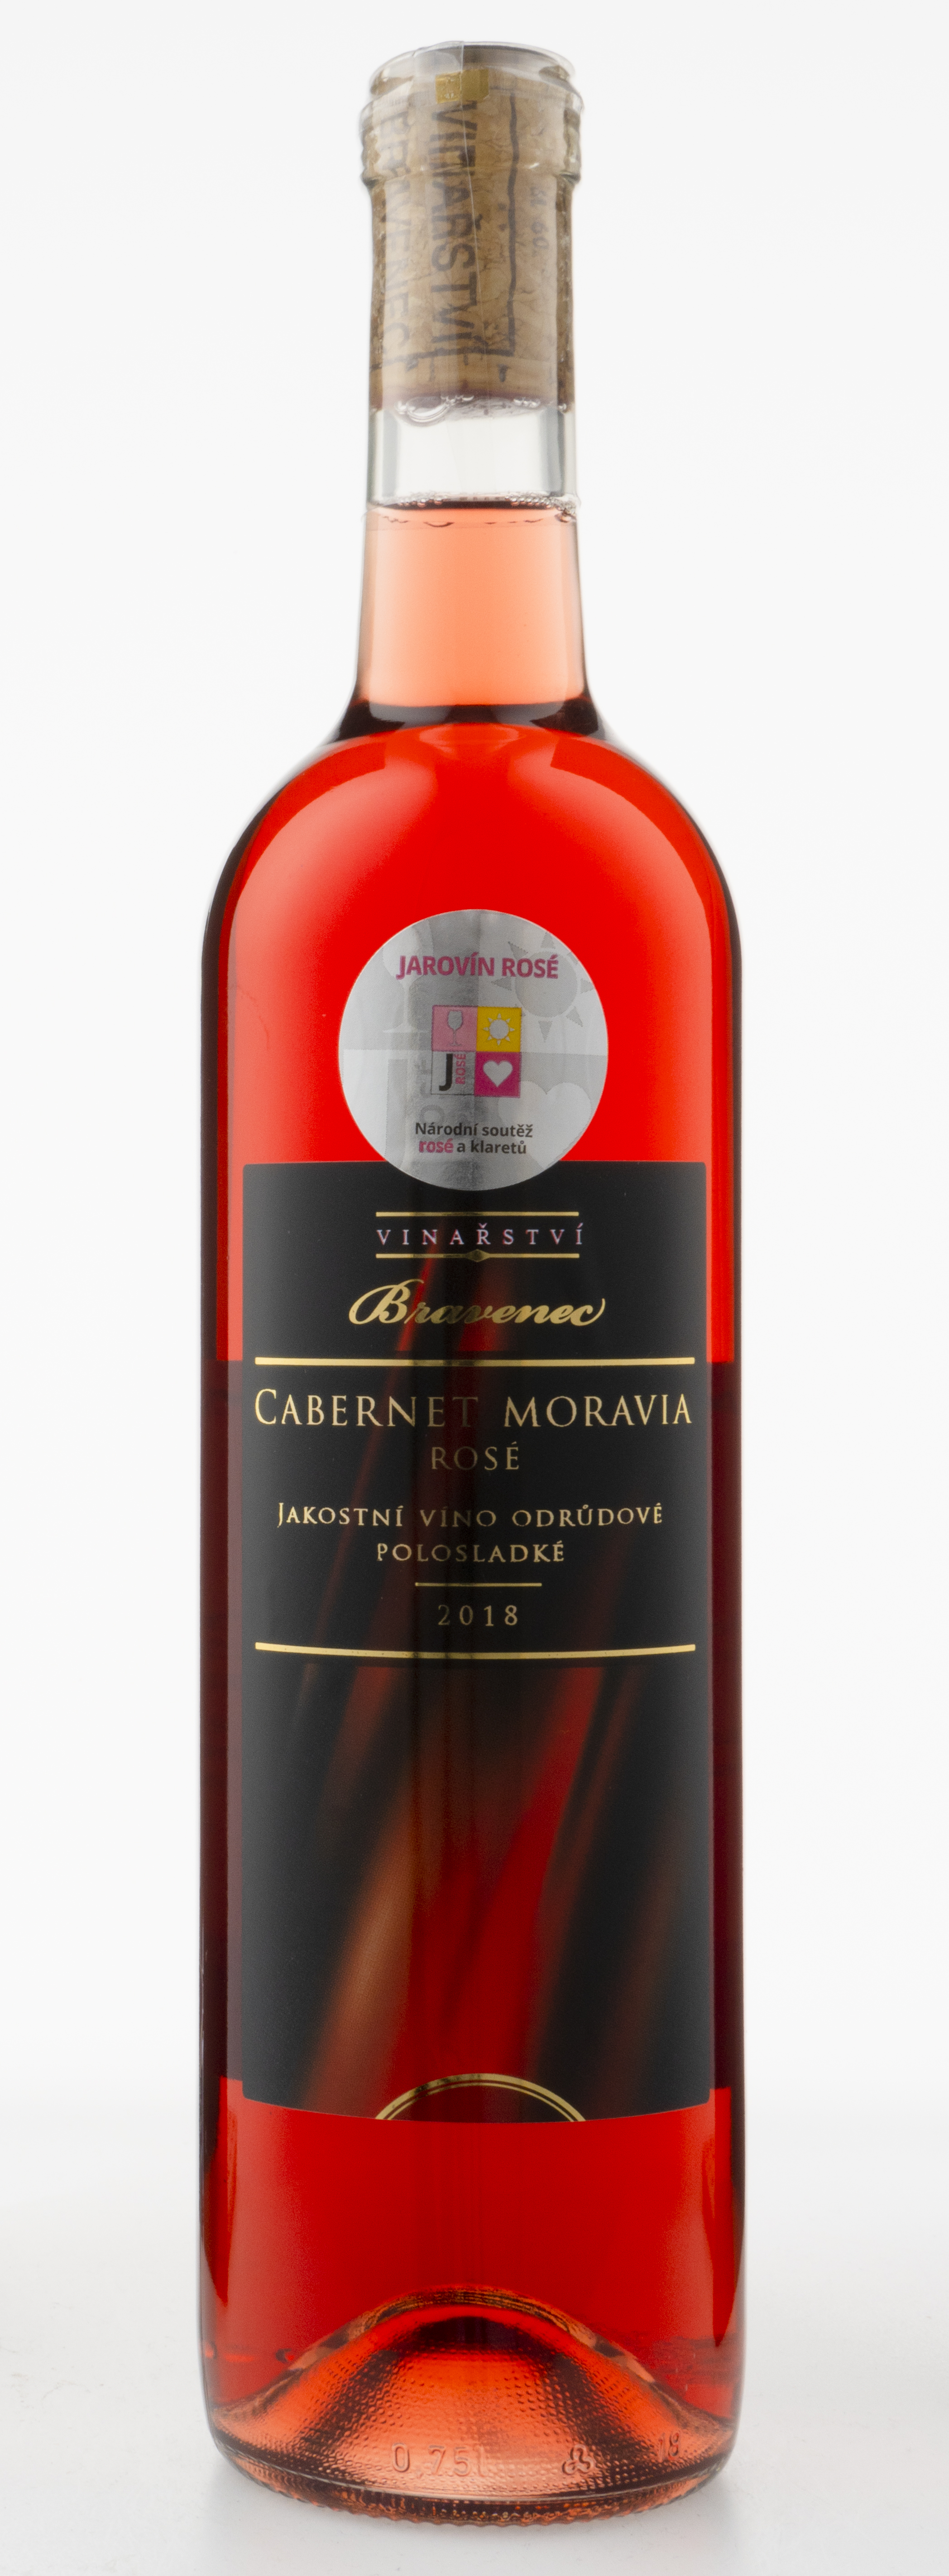 Cabernet Moravia rosé 2018 - JAK, polosladké